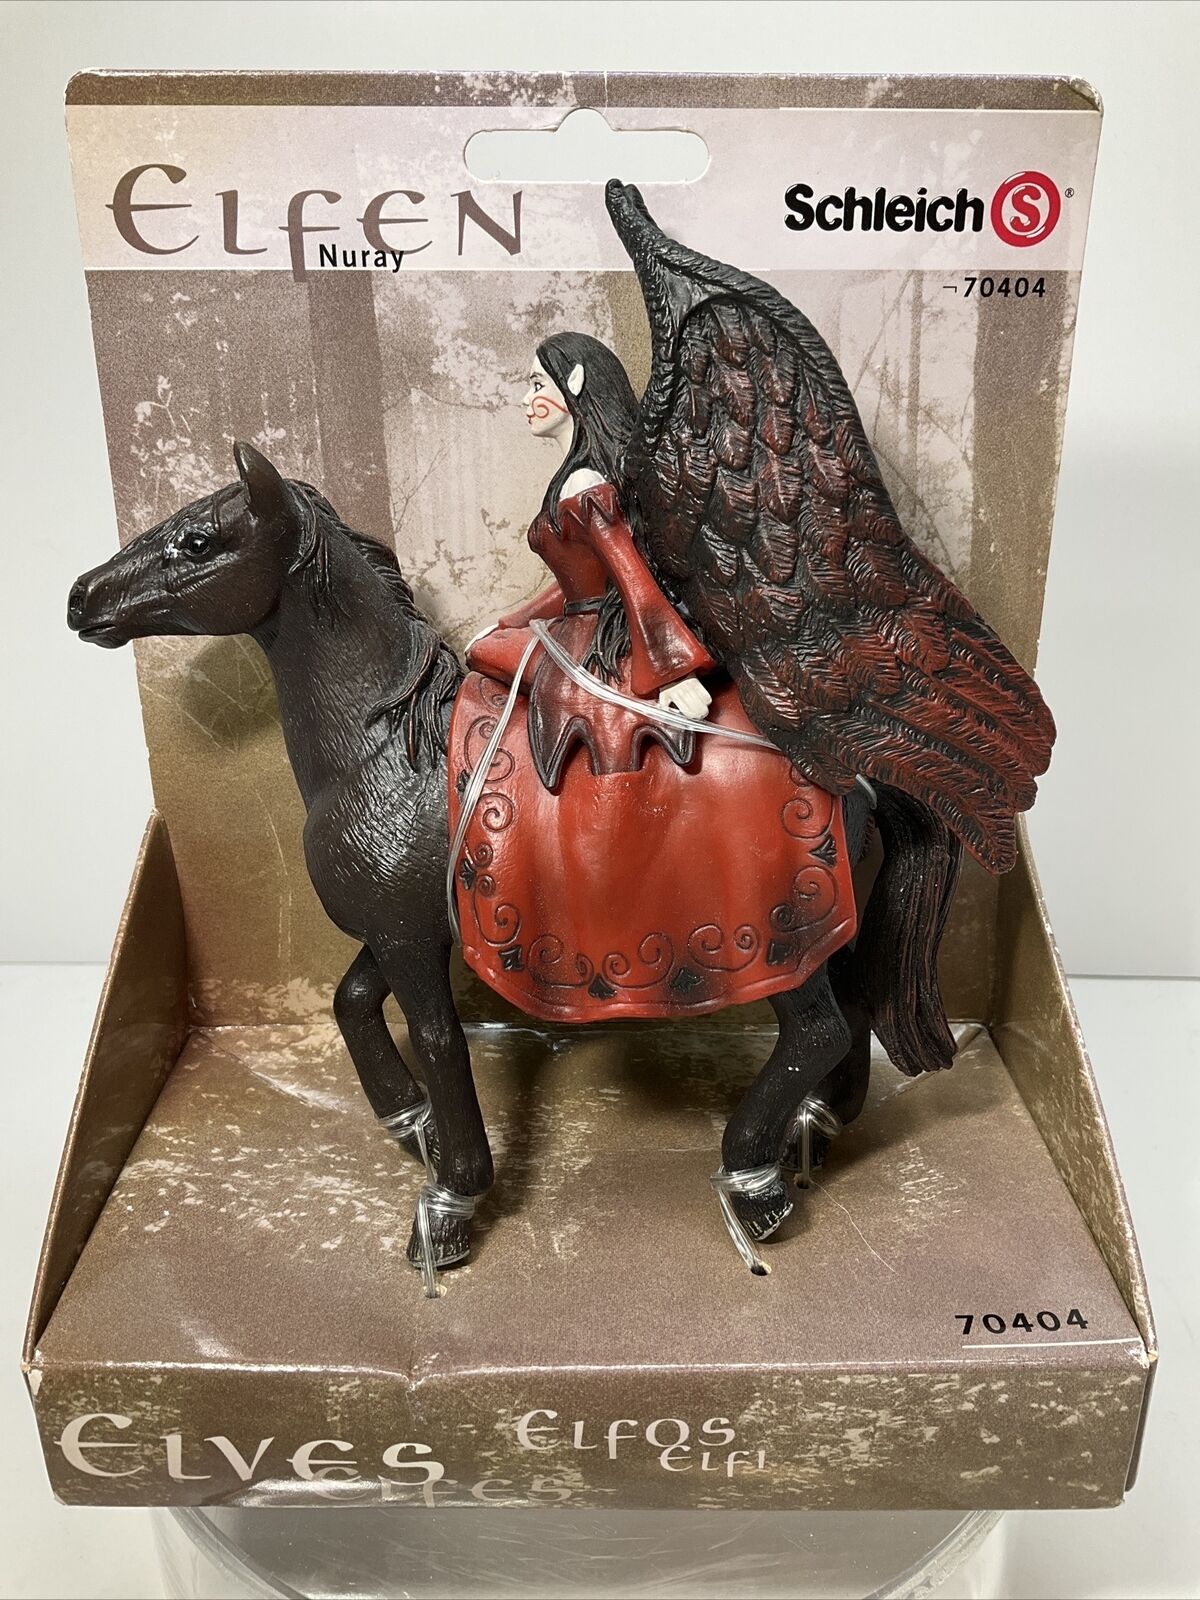 Schleich Elfen NURAY #70404 Retired Fantasy Elves,still In Package  Never Used